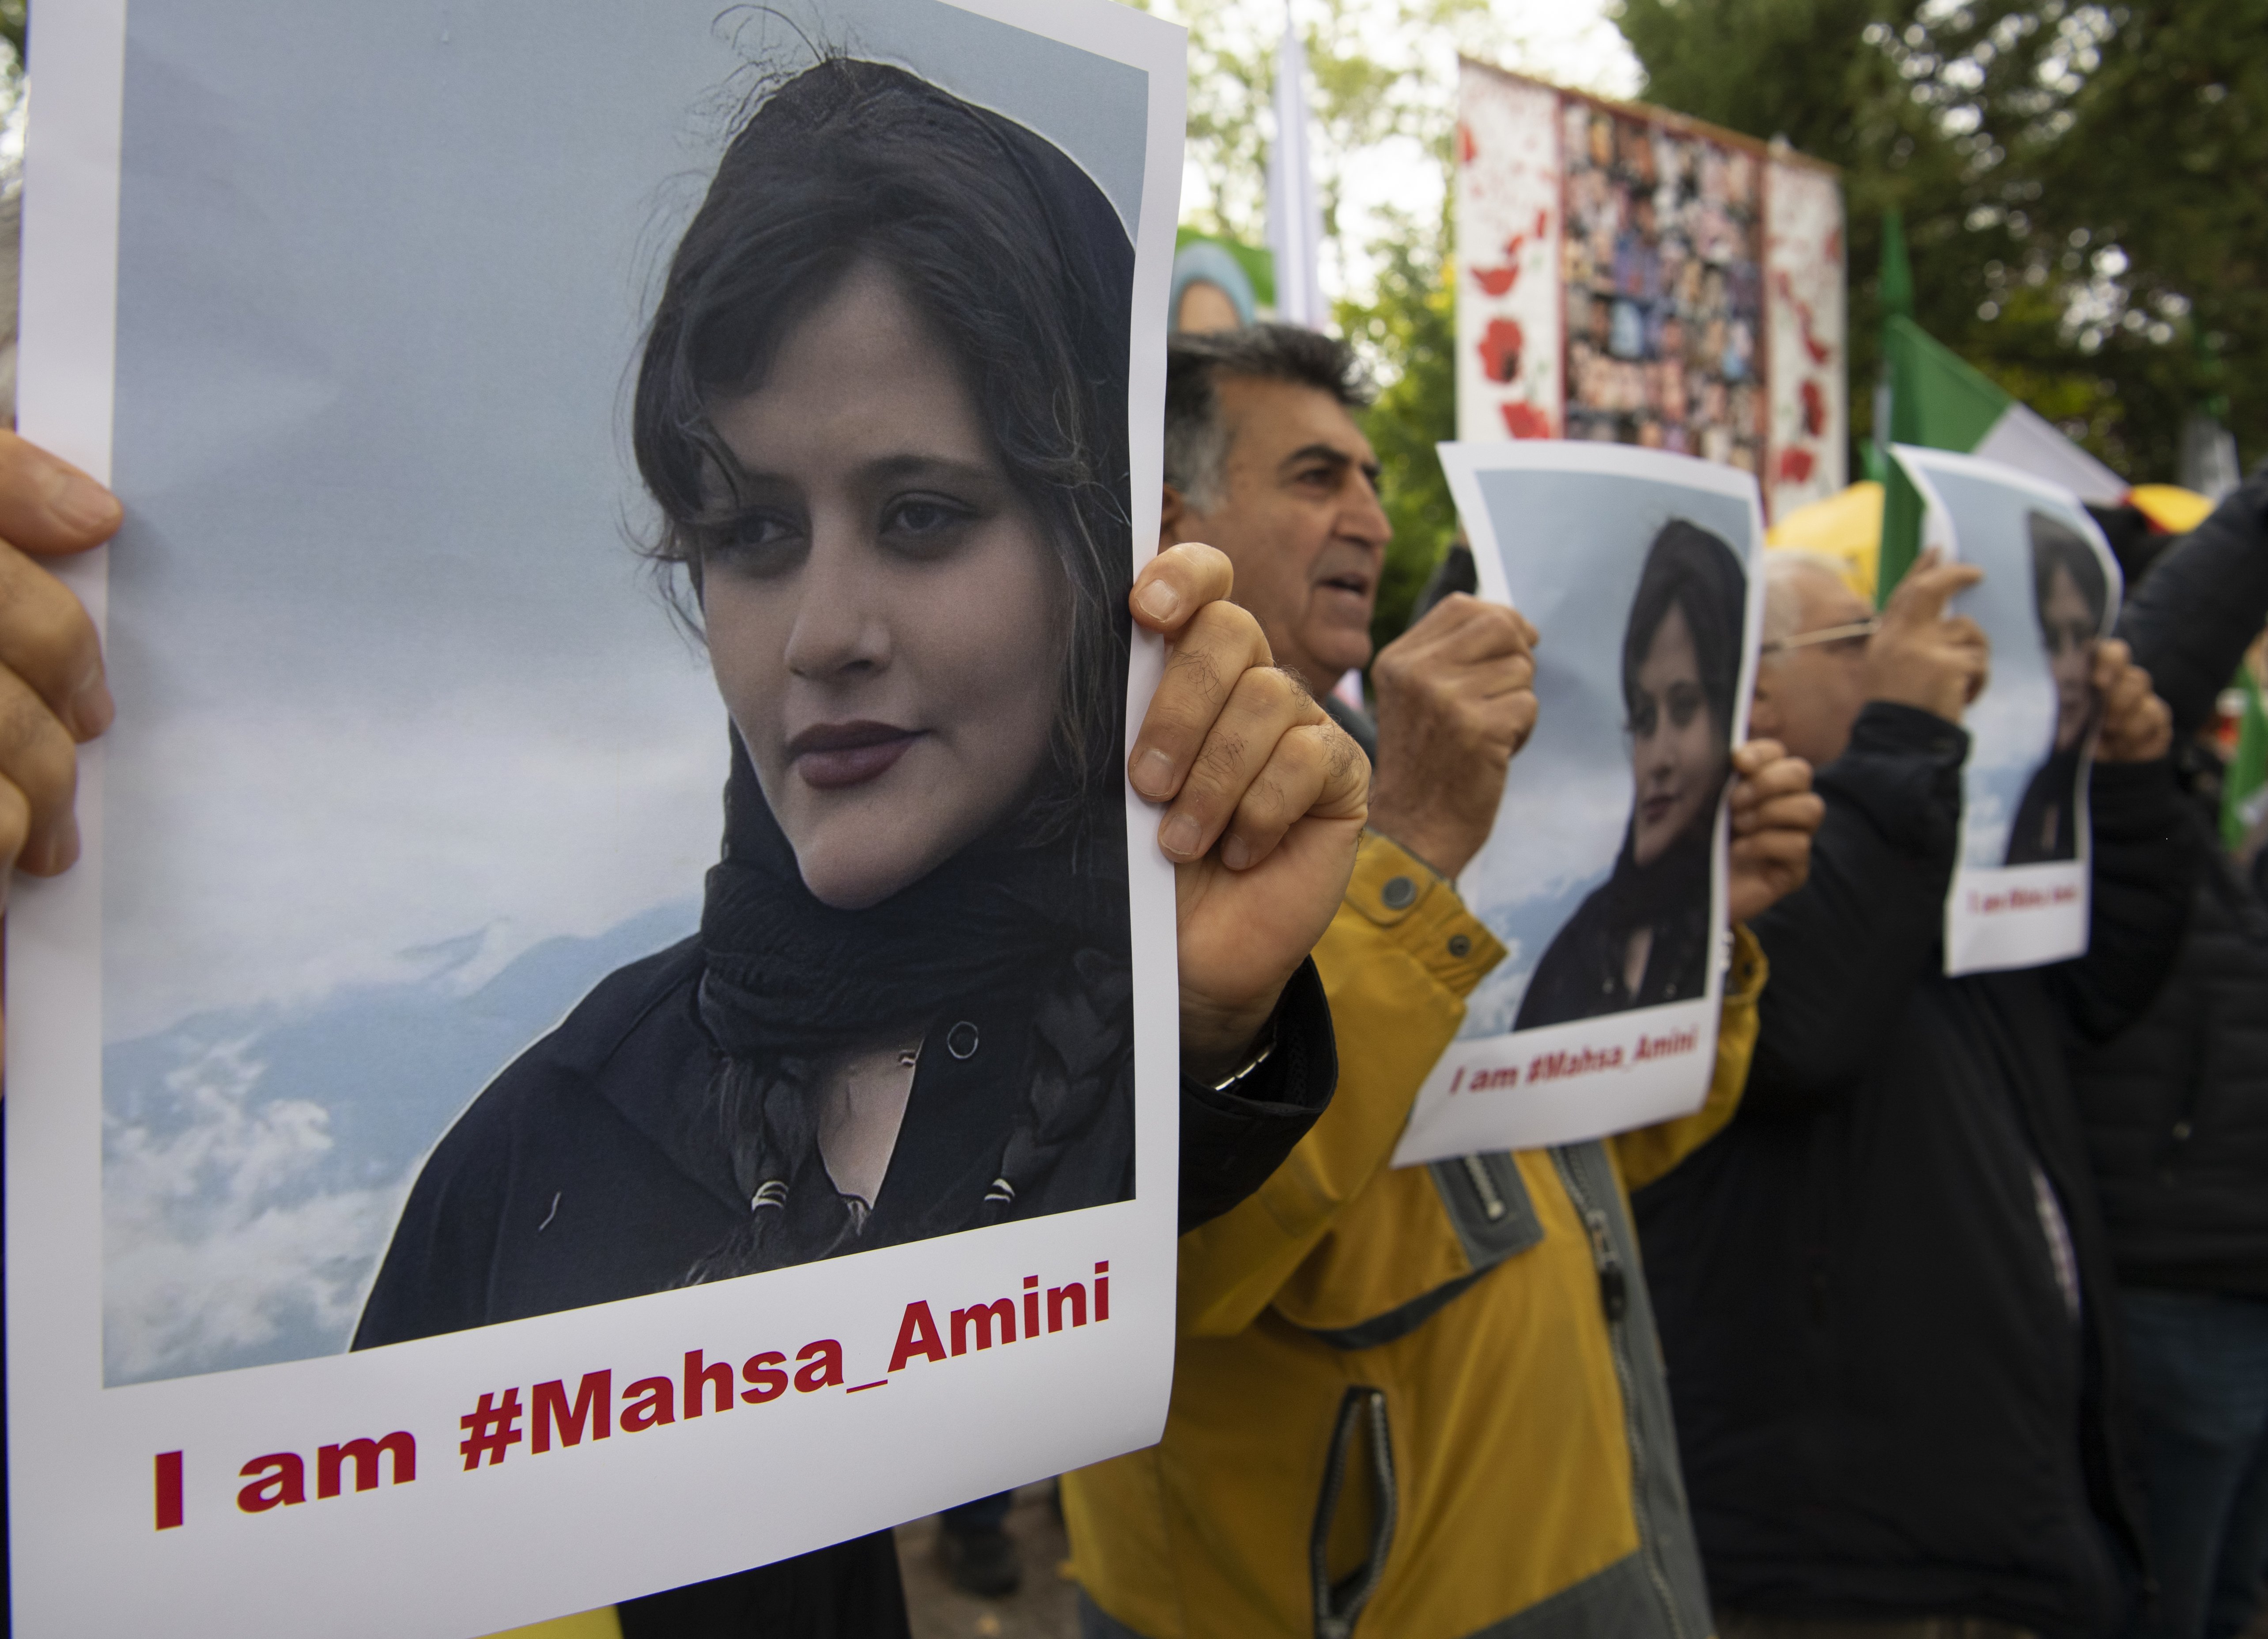 Irán condena a prisión a las dos periodistas que desvelaron el caso de Mahsa Amini